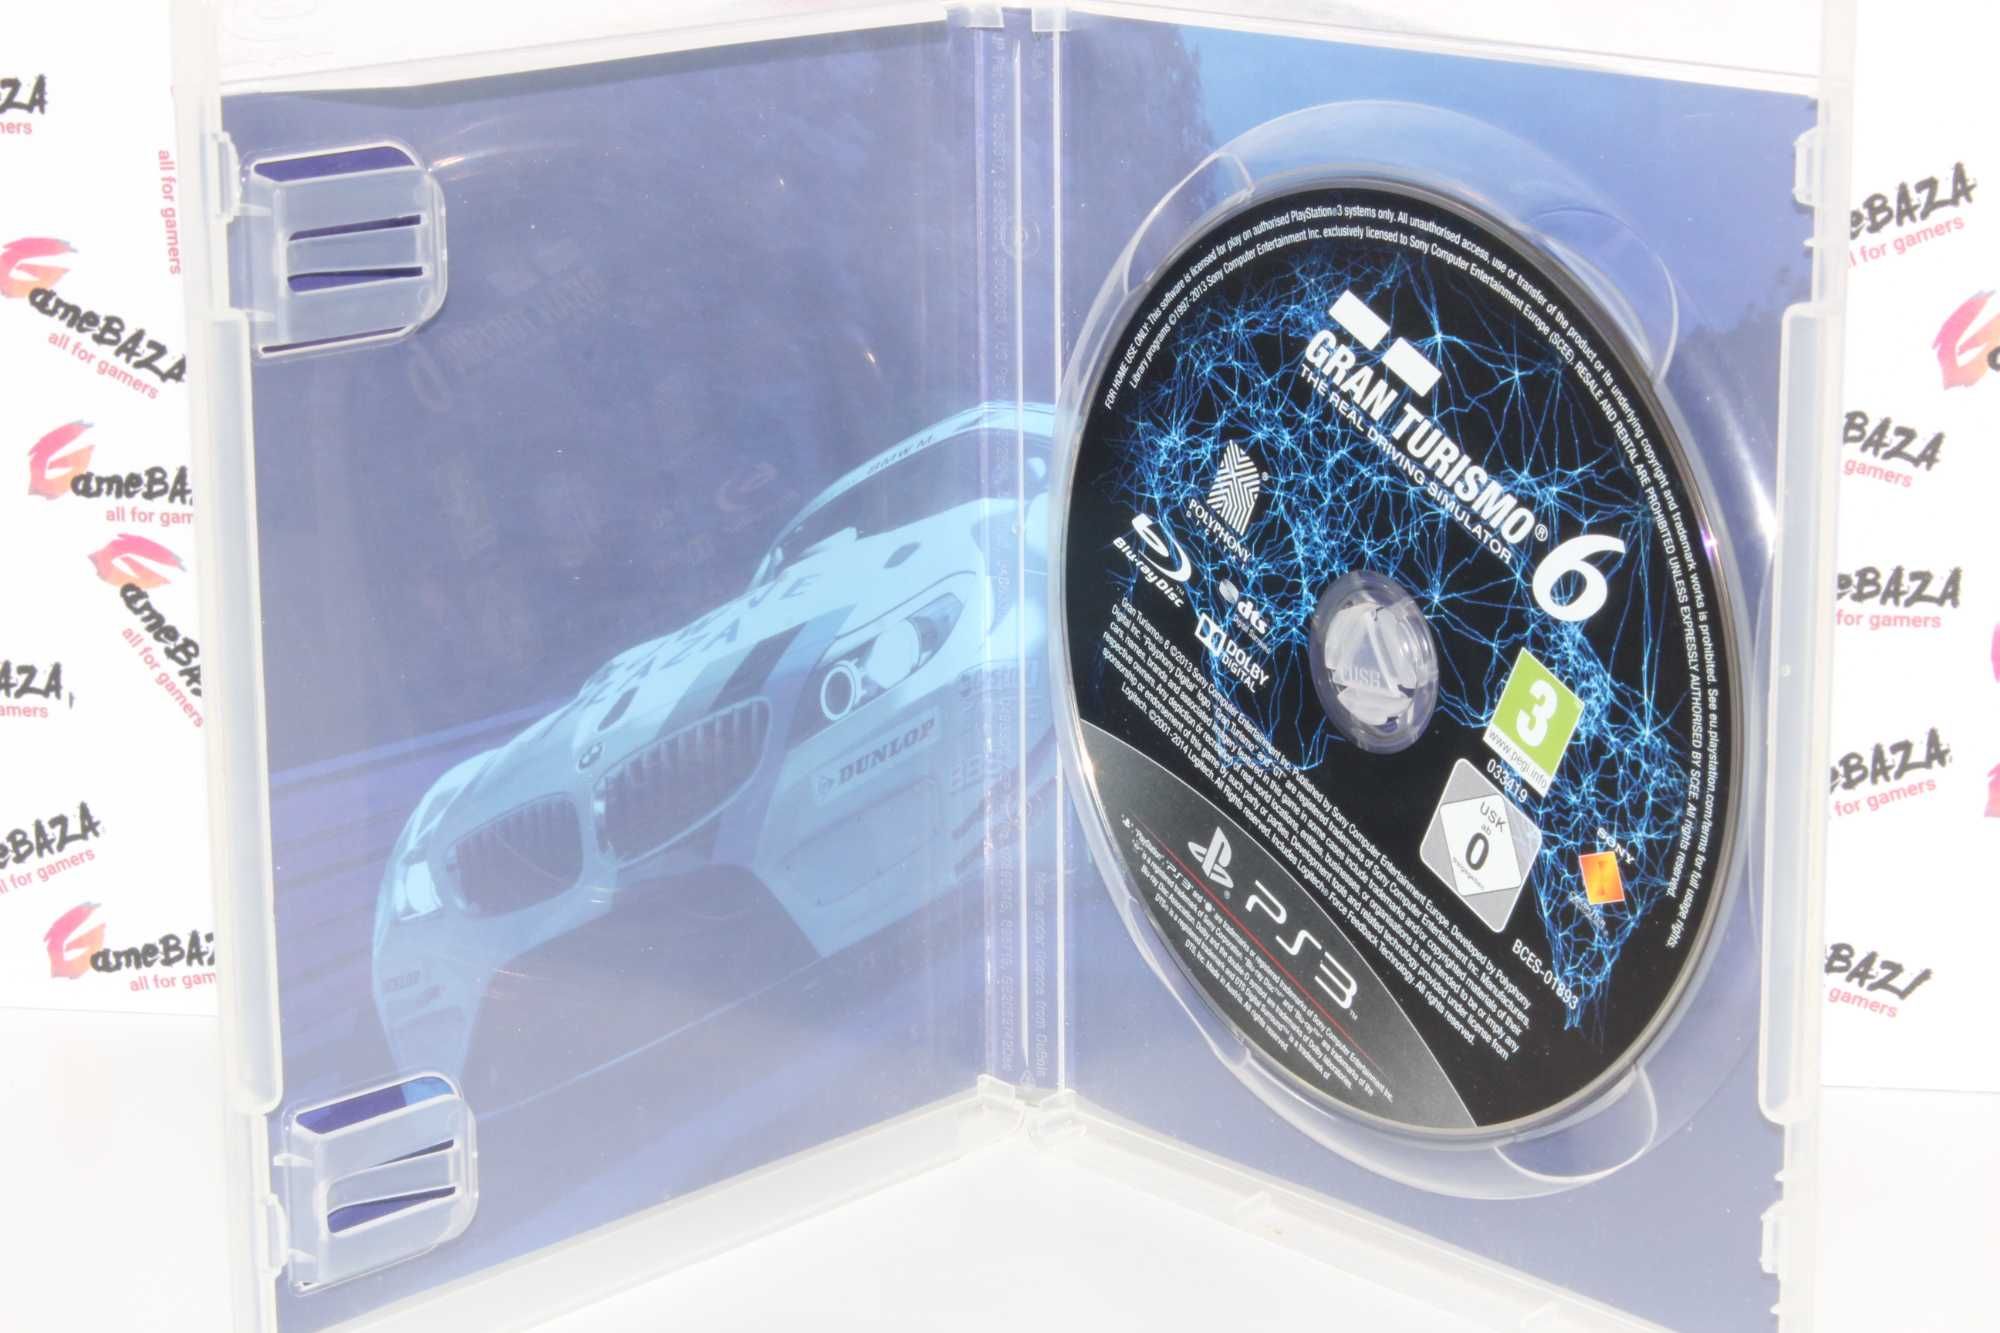 Gran Turismo 6 PS3 PL GameBAZA